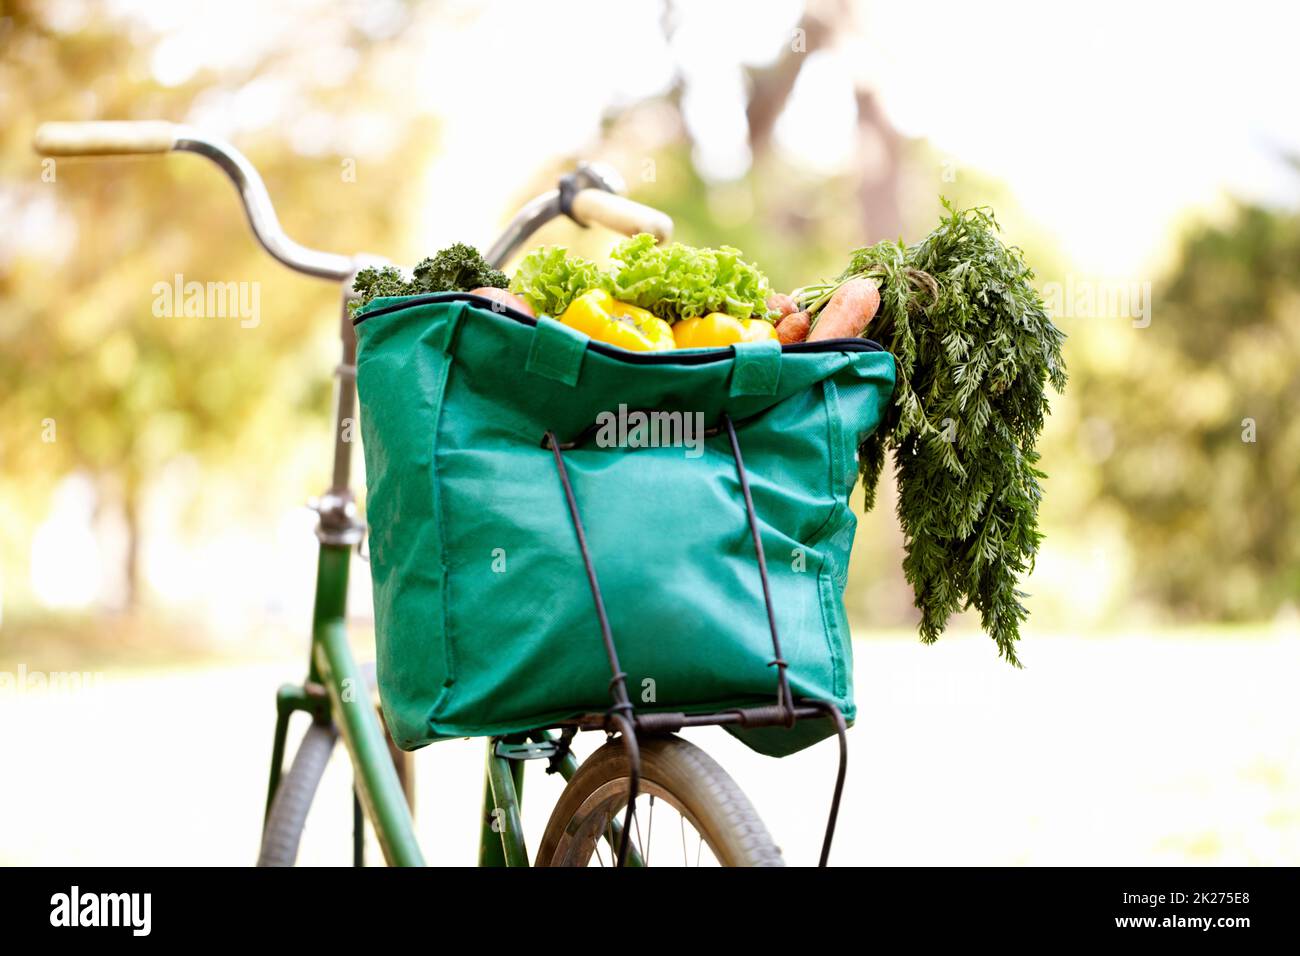 Gesunde Ernährung und Bewegung. Zugeschnittenes Bild einer Tasche mit Gemüse auf einem Fahrrad. Stockfoto